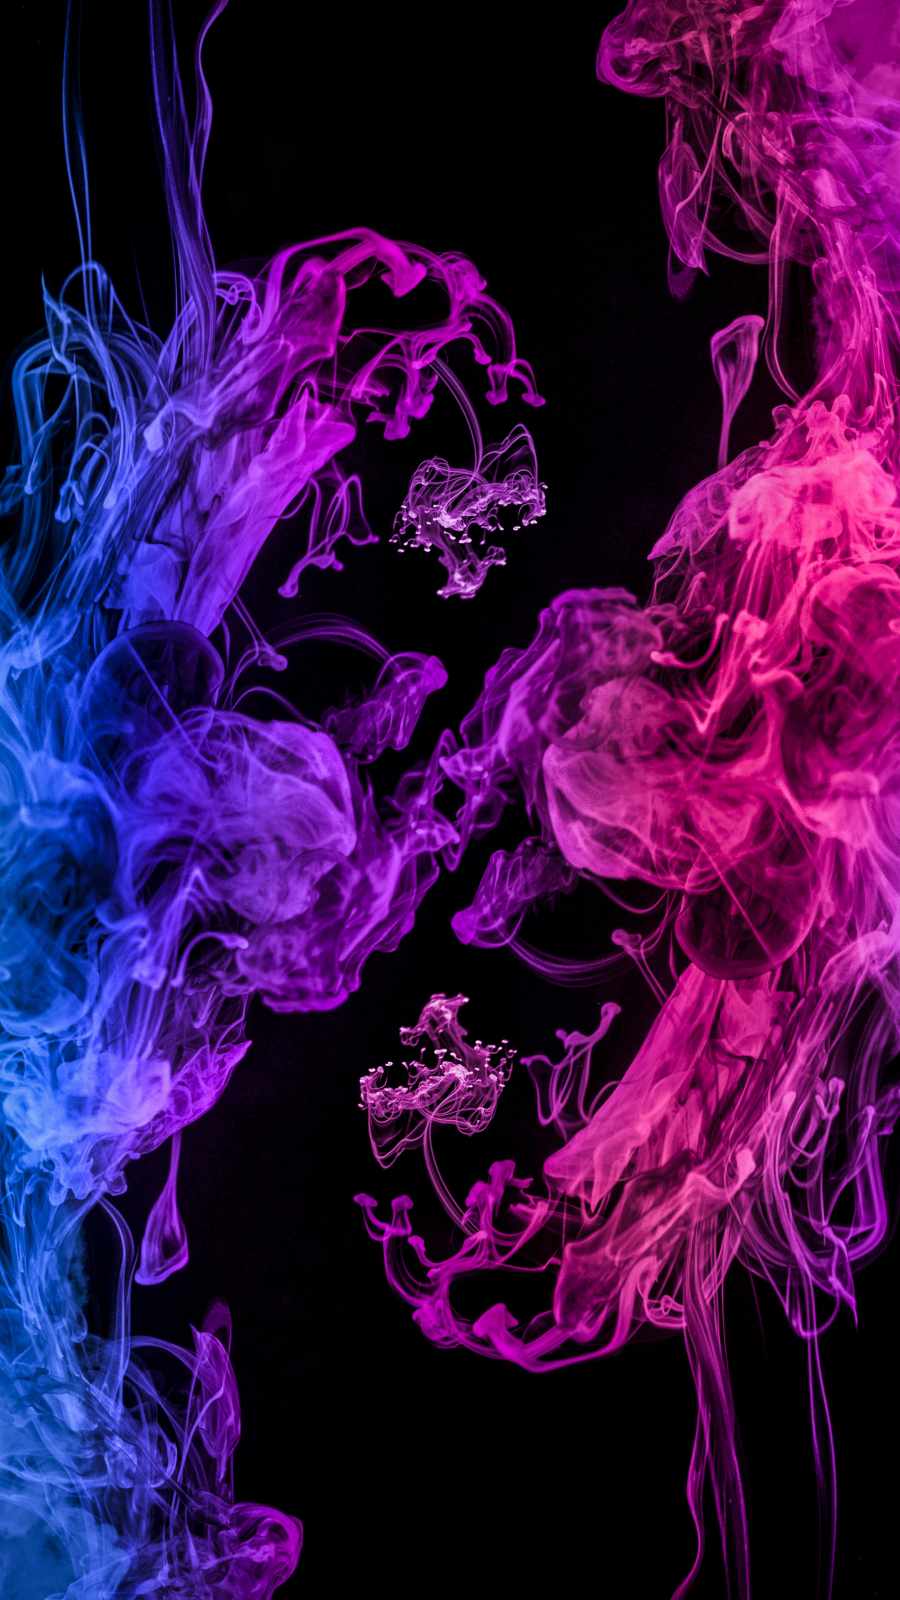 Color Smoke Wallpapers